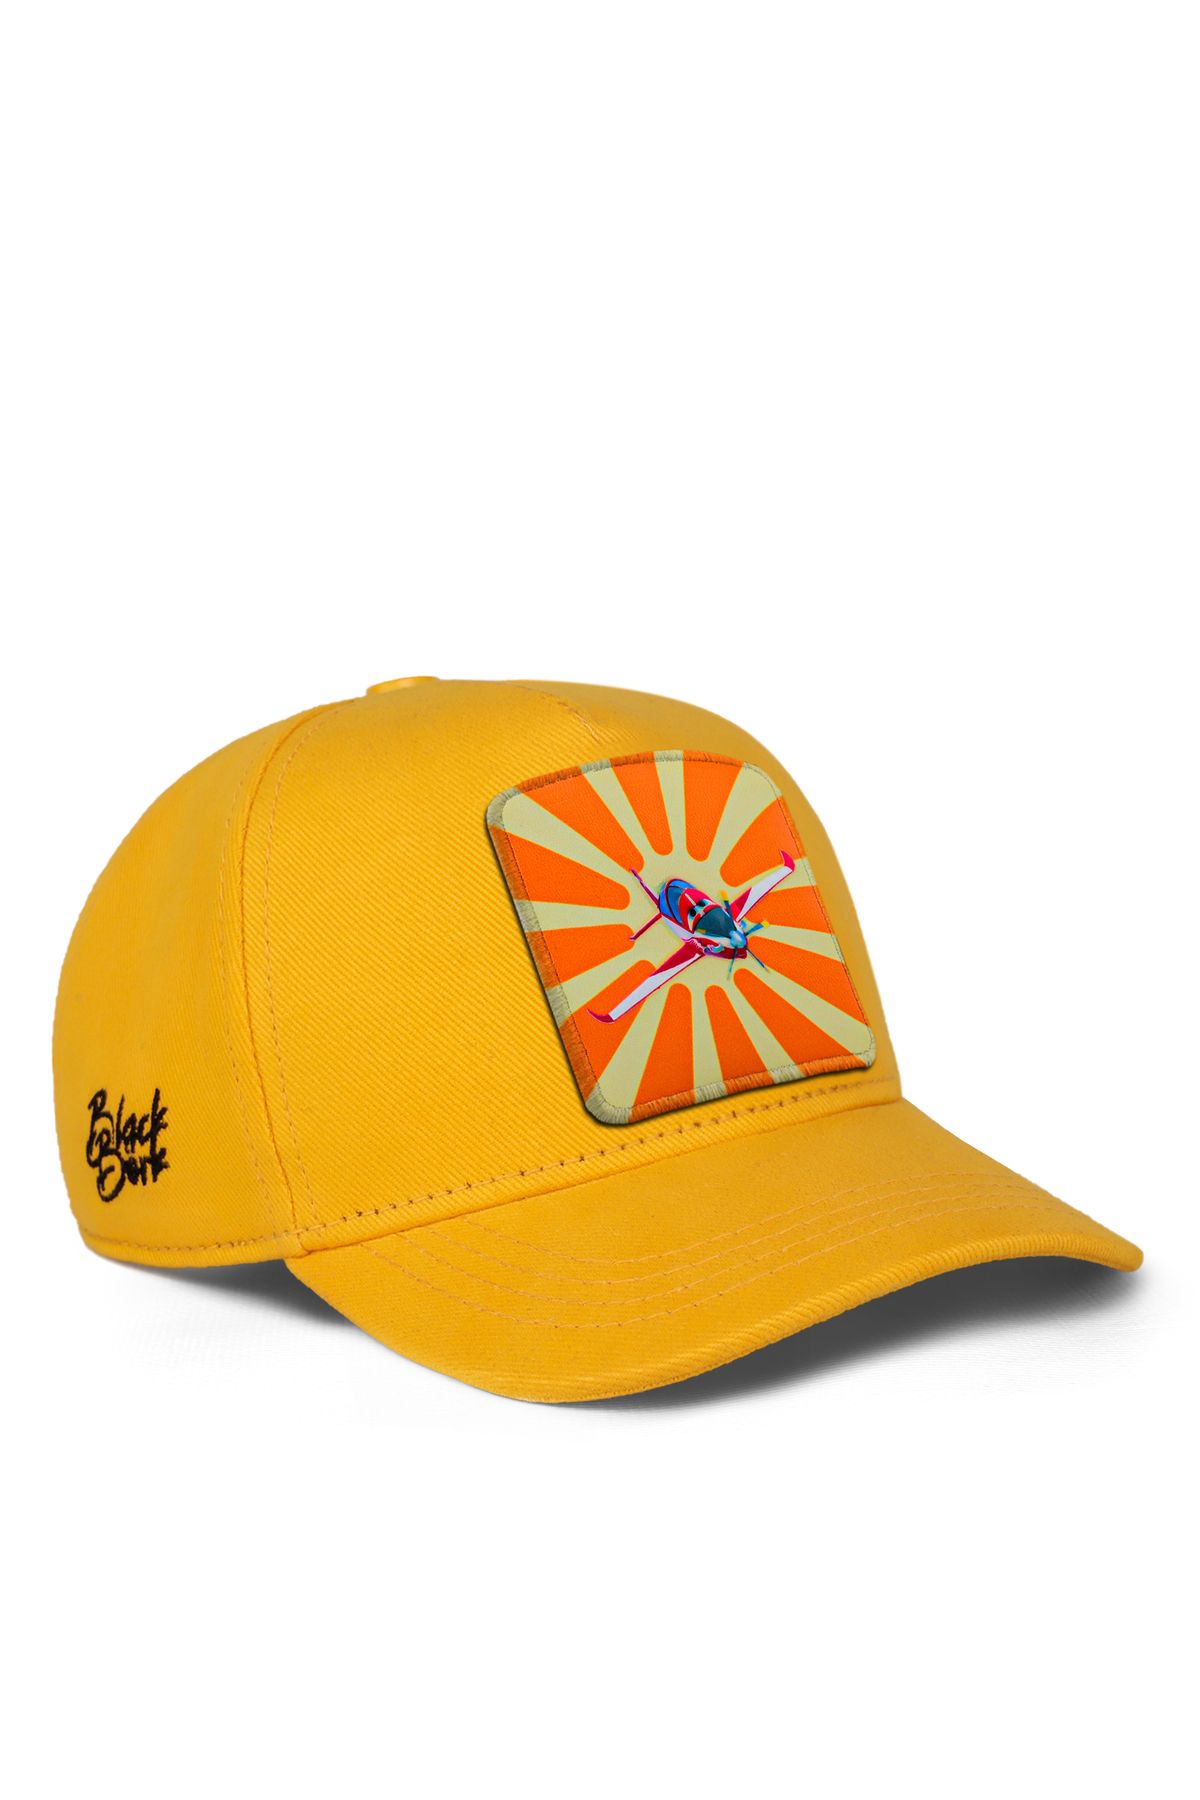 BlackBörk V1 Baseball Güneş Hürkuş Lisanlı Sarı Çocuk Şapka